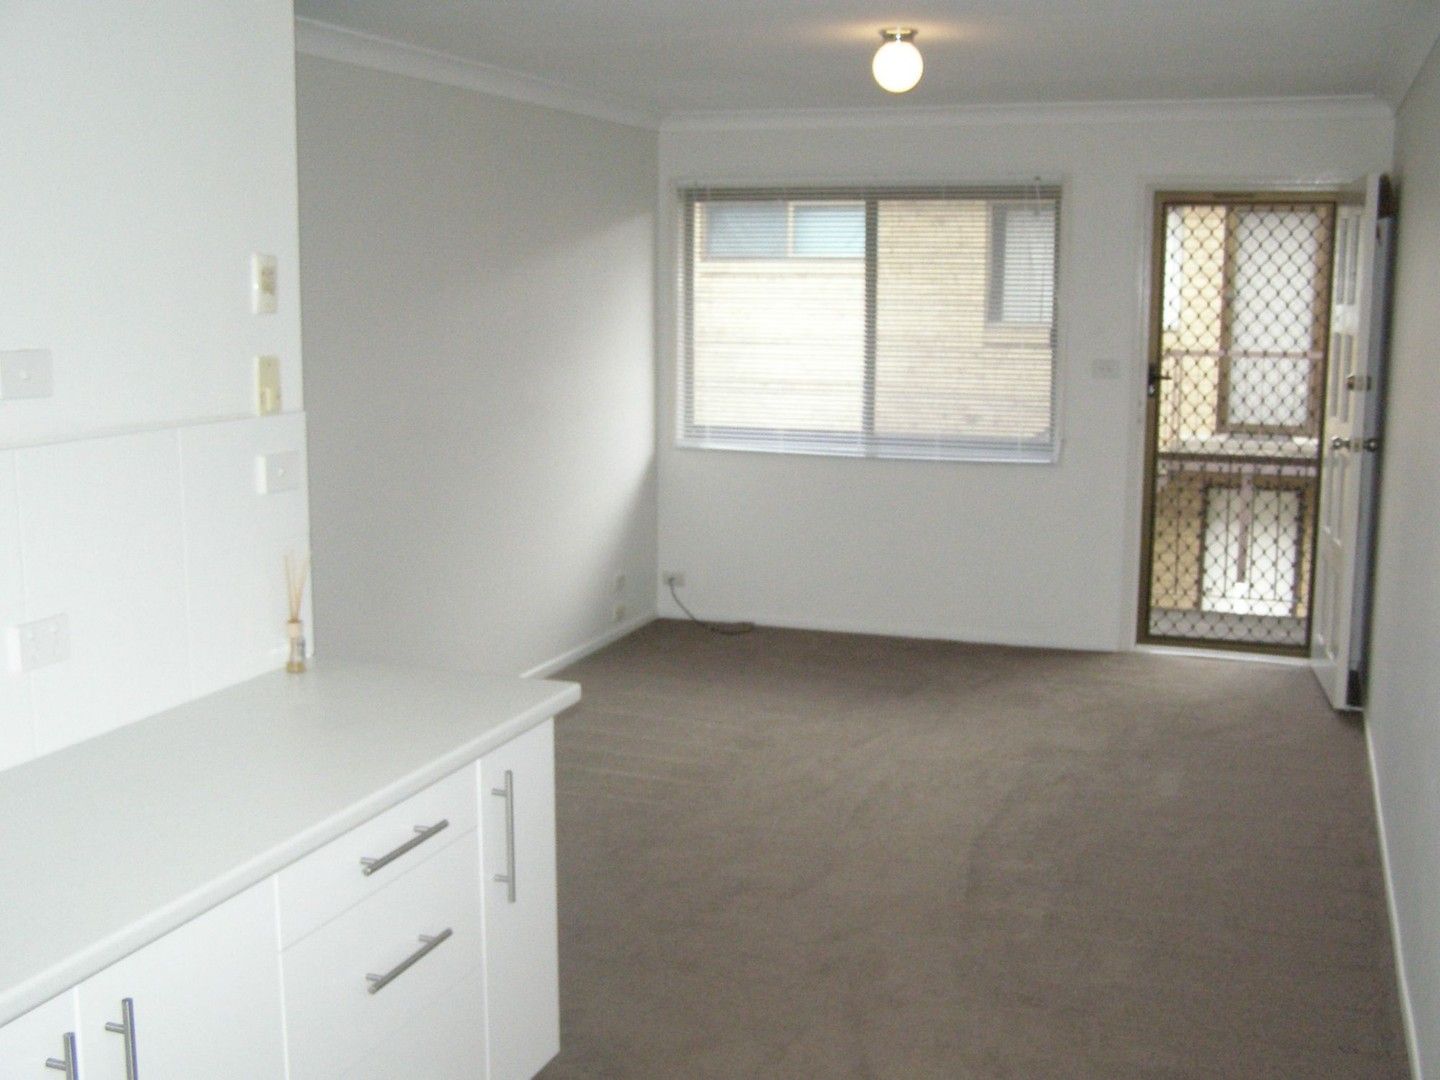 2 bedrooms Apartment / Unit / Flat in 9/10 North Road WOODRIDGE QLD, 4114